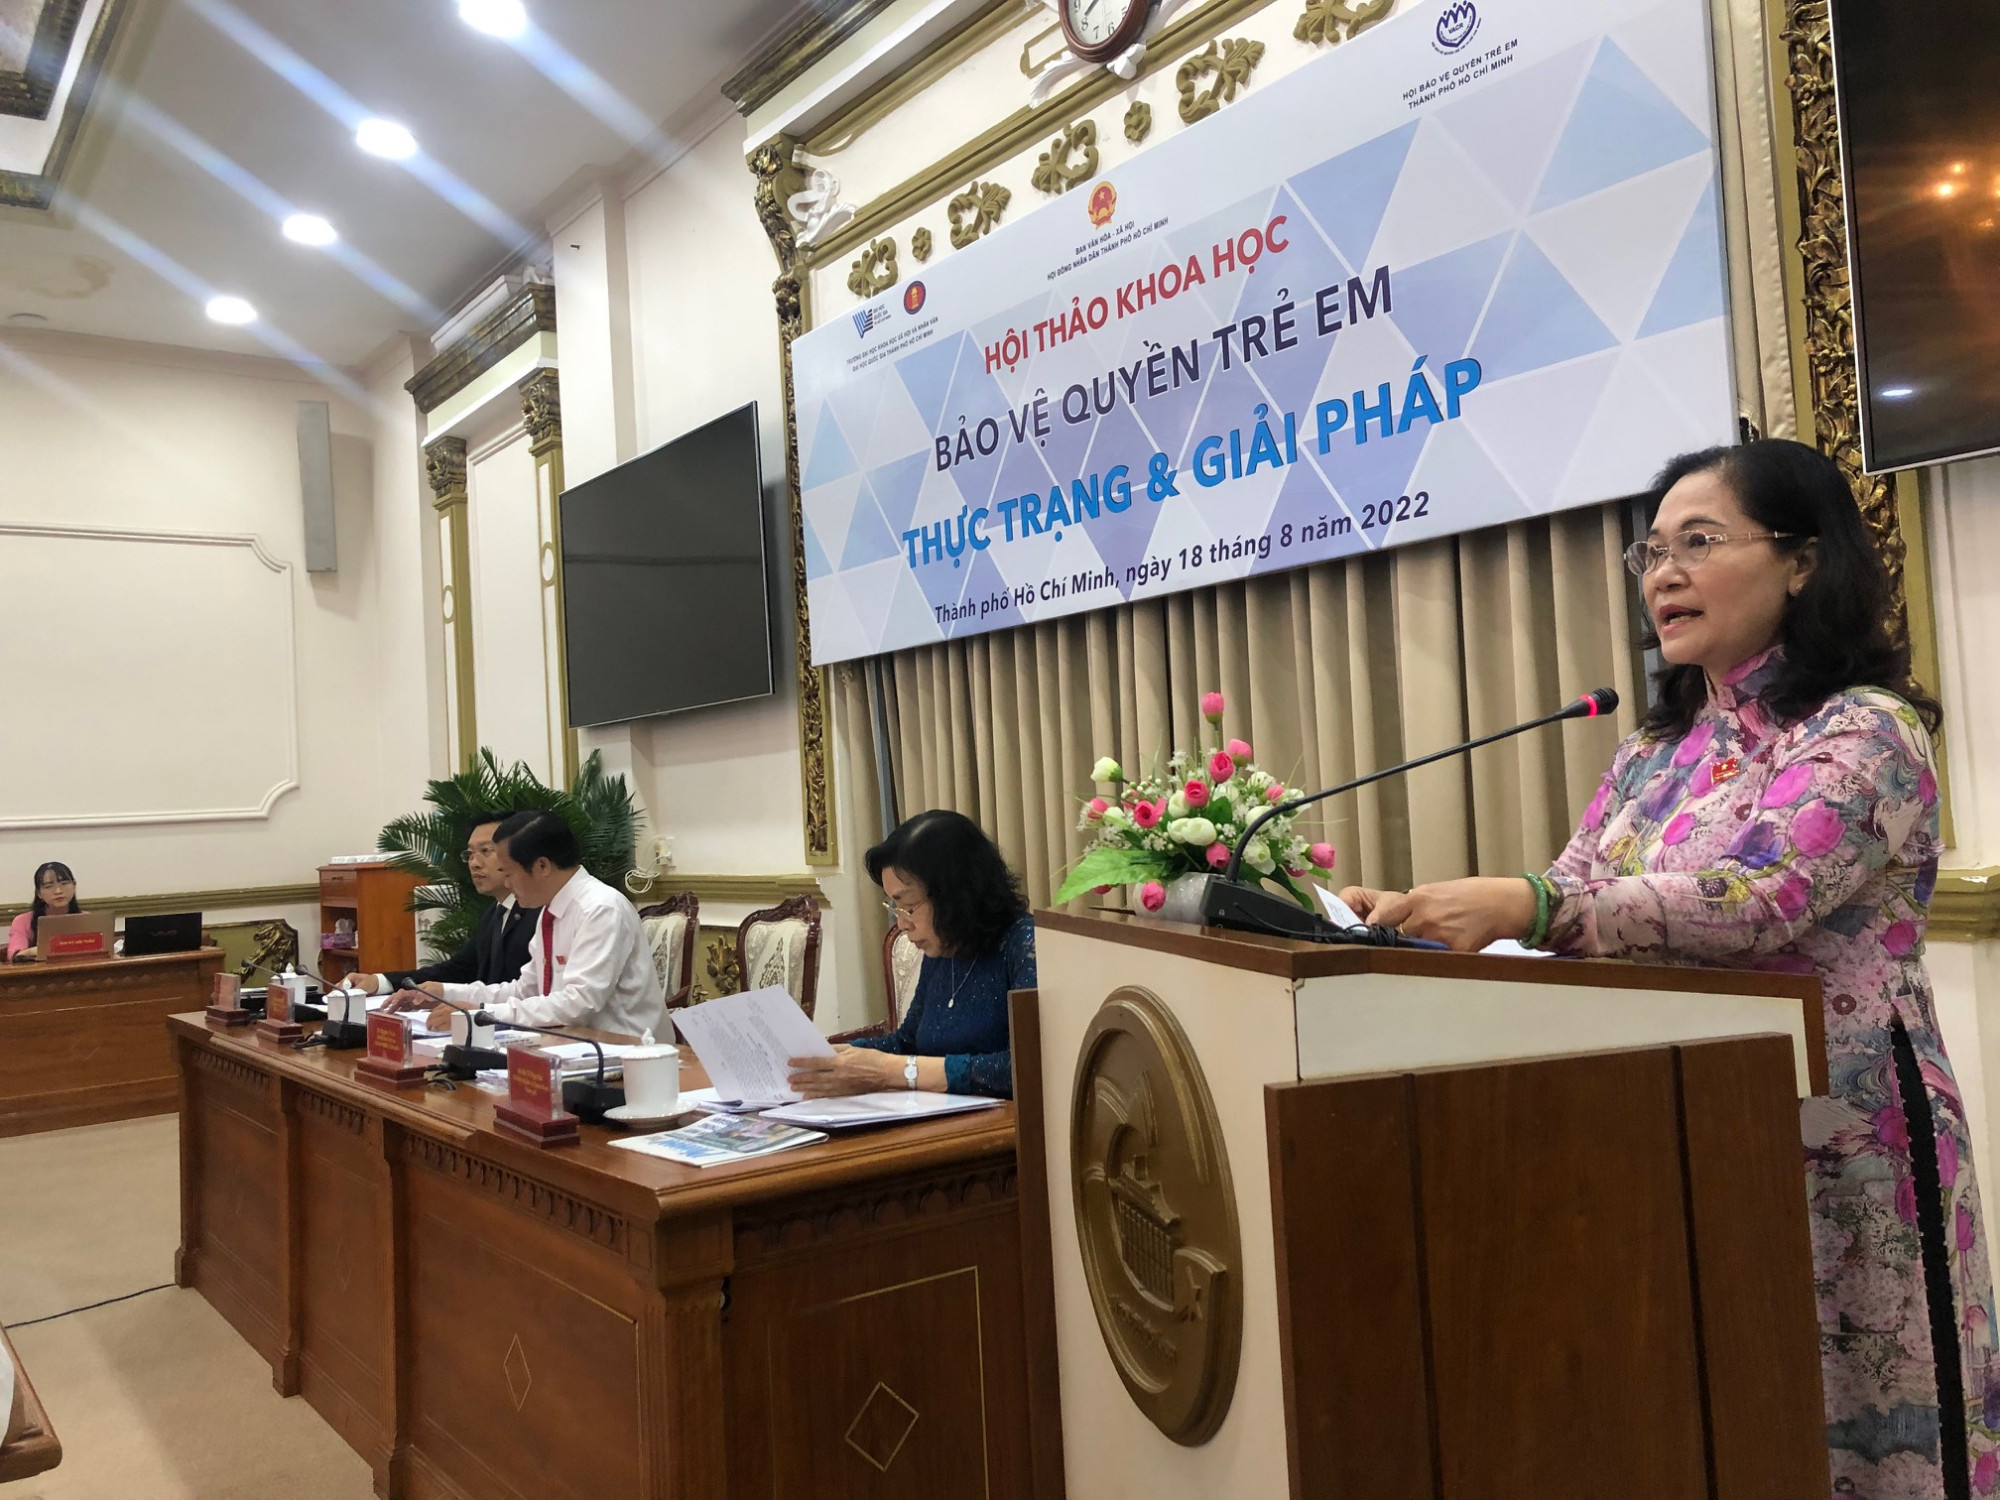 Chủ tịch UBND TPHCM Nguyễn Thị Lệ phát biểu chào mừng và định hướng thảo luận tại hội thảo khoa học “Bảo vệ quyền trẻ em - Thực trạng và giải pháp” ngày 18/3. Ảnh: Quốc Ngọc